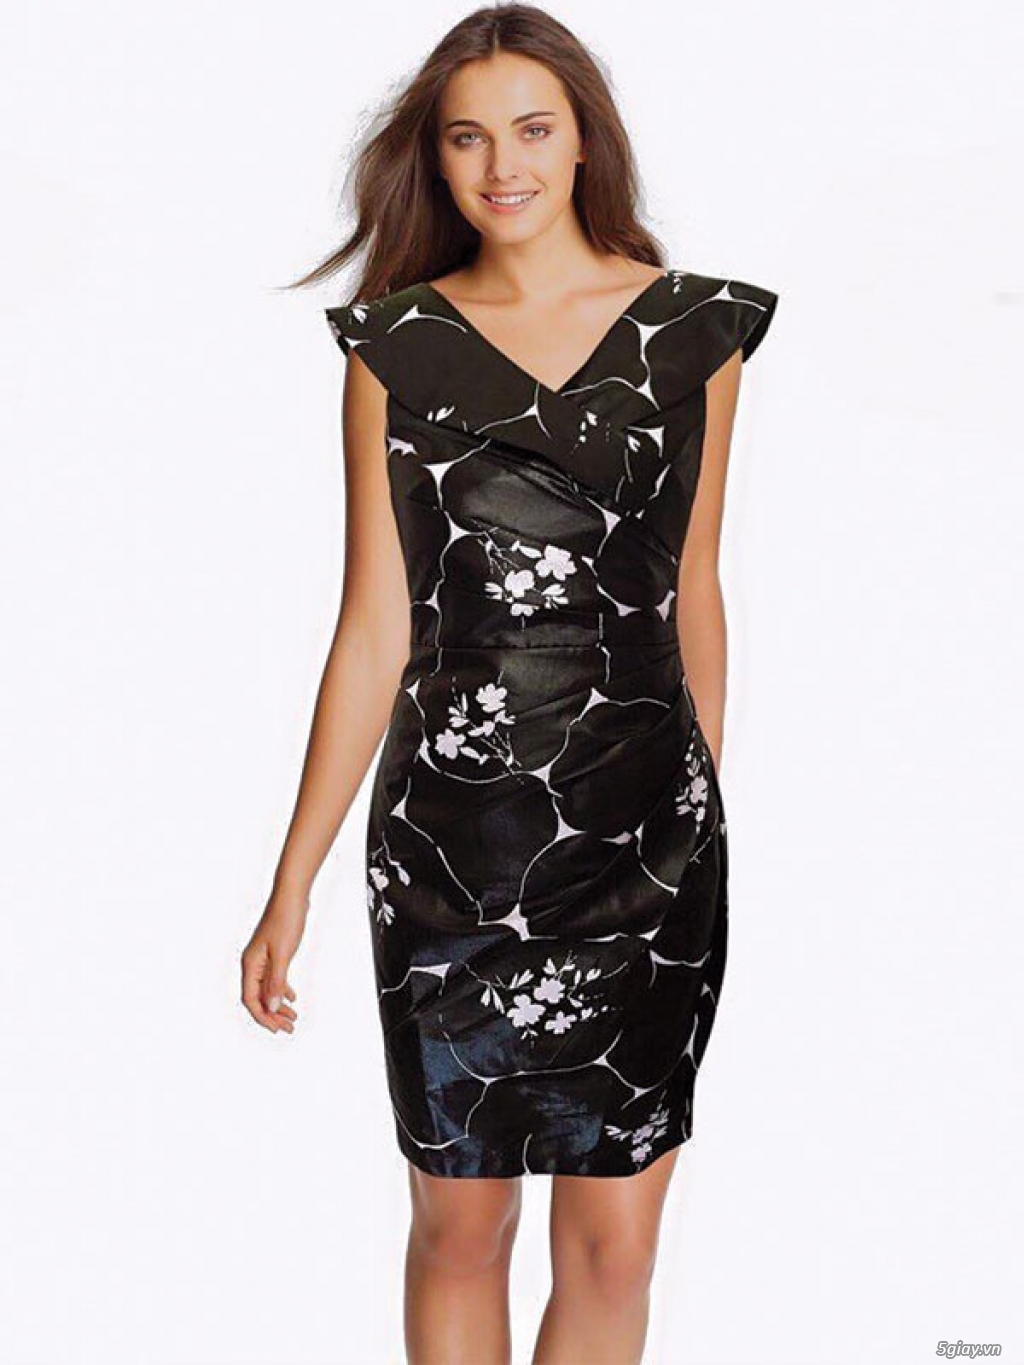 VNXK Dresses HÀNG HIỆU GIÁ RẺ Chuyên sỉ lẻ hàng VNXK - Quần áo thời trang - Ellashop.com.vn - 10